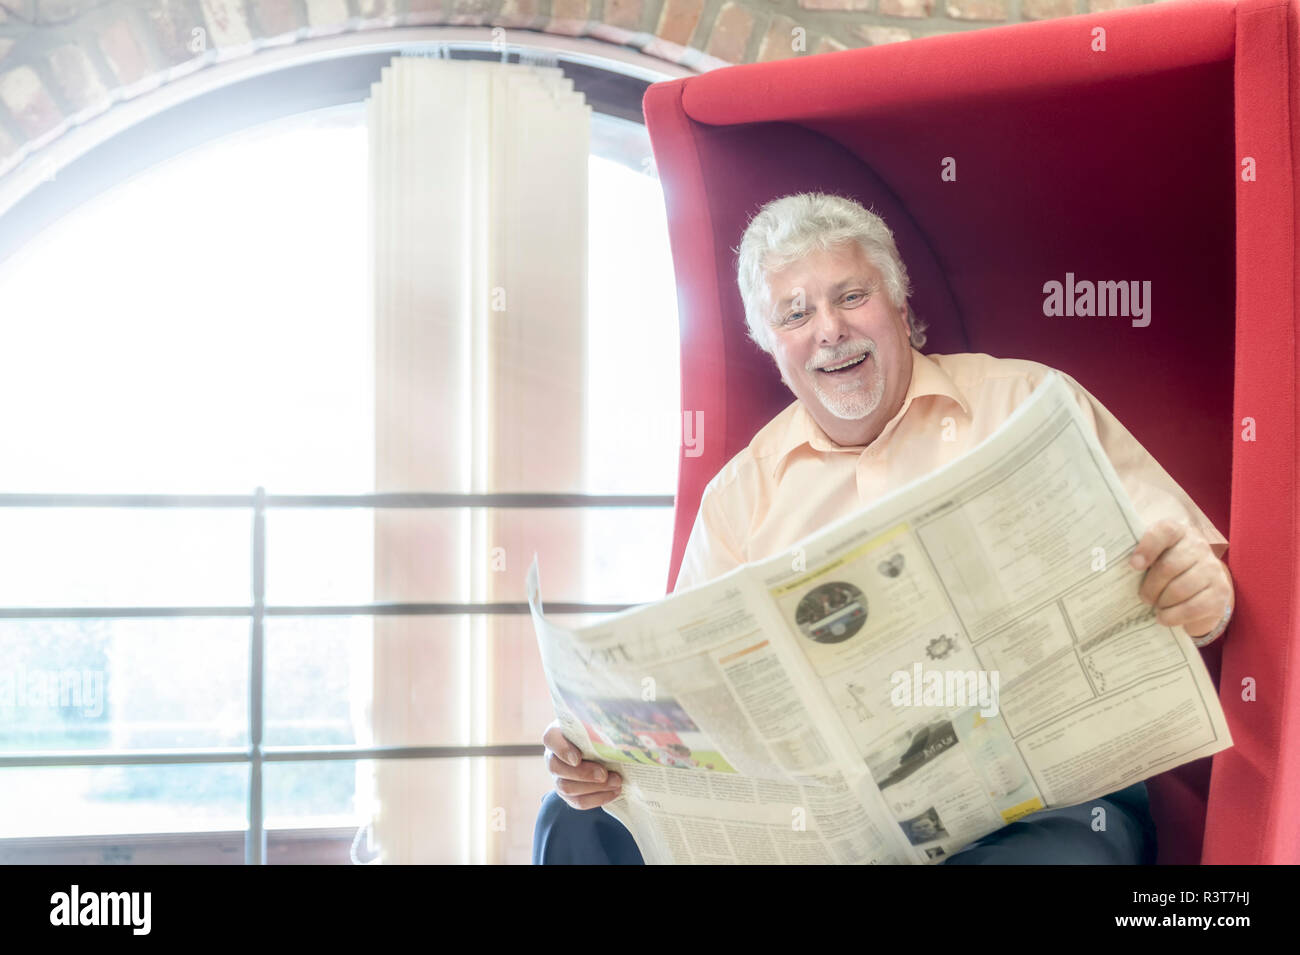 Senior lachender Vergnügt mit einem roten Sessel Zeitung. Grevenbroich, Nordrhein-Westfalen, Deutschland Banque D'Images